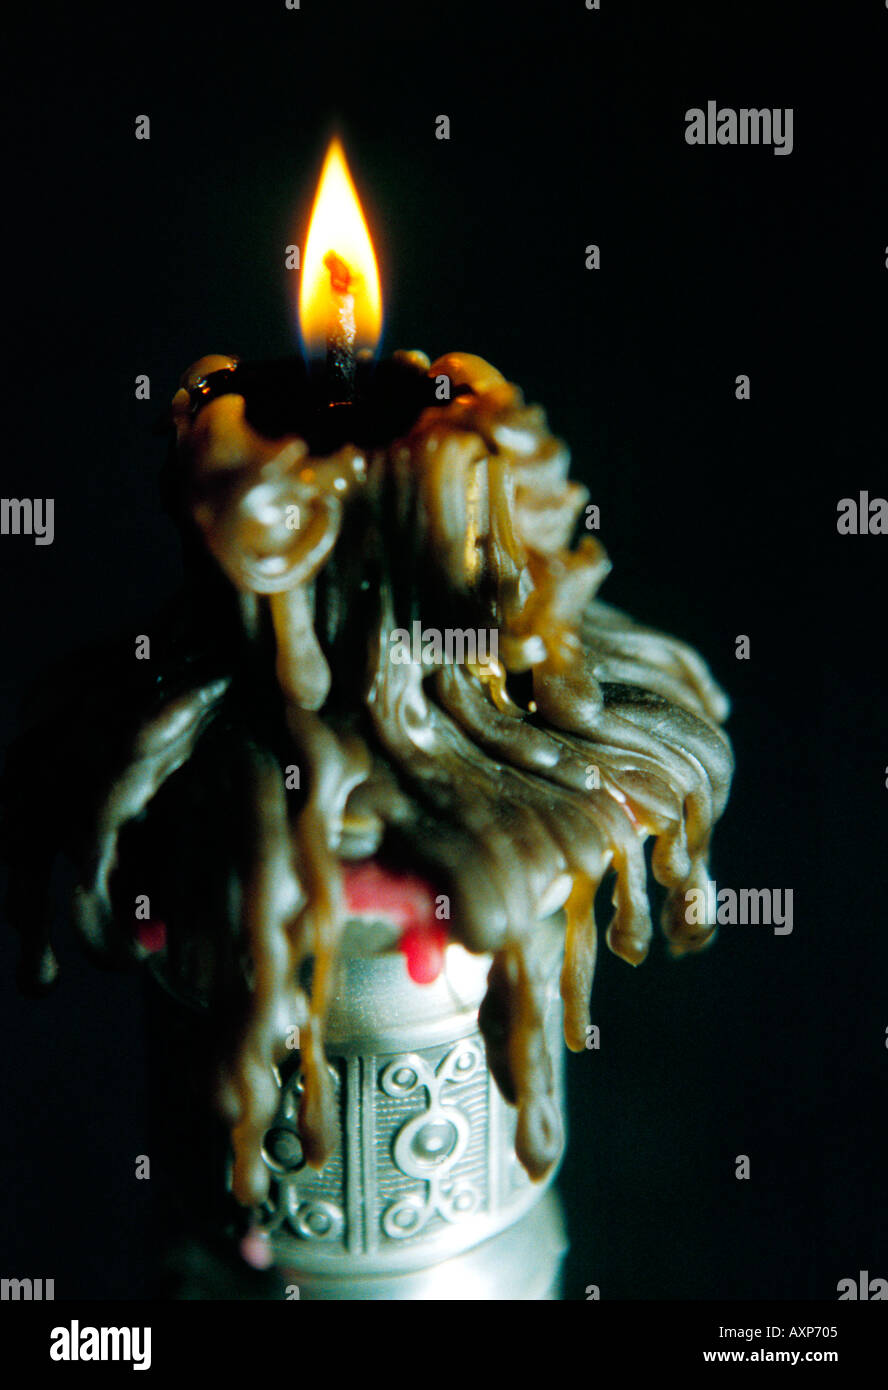 Eine brennende Kerze mit rieselt der geschmolzene Wachs Nahaufnahme  Stockfotografie - Alamy